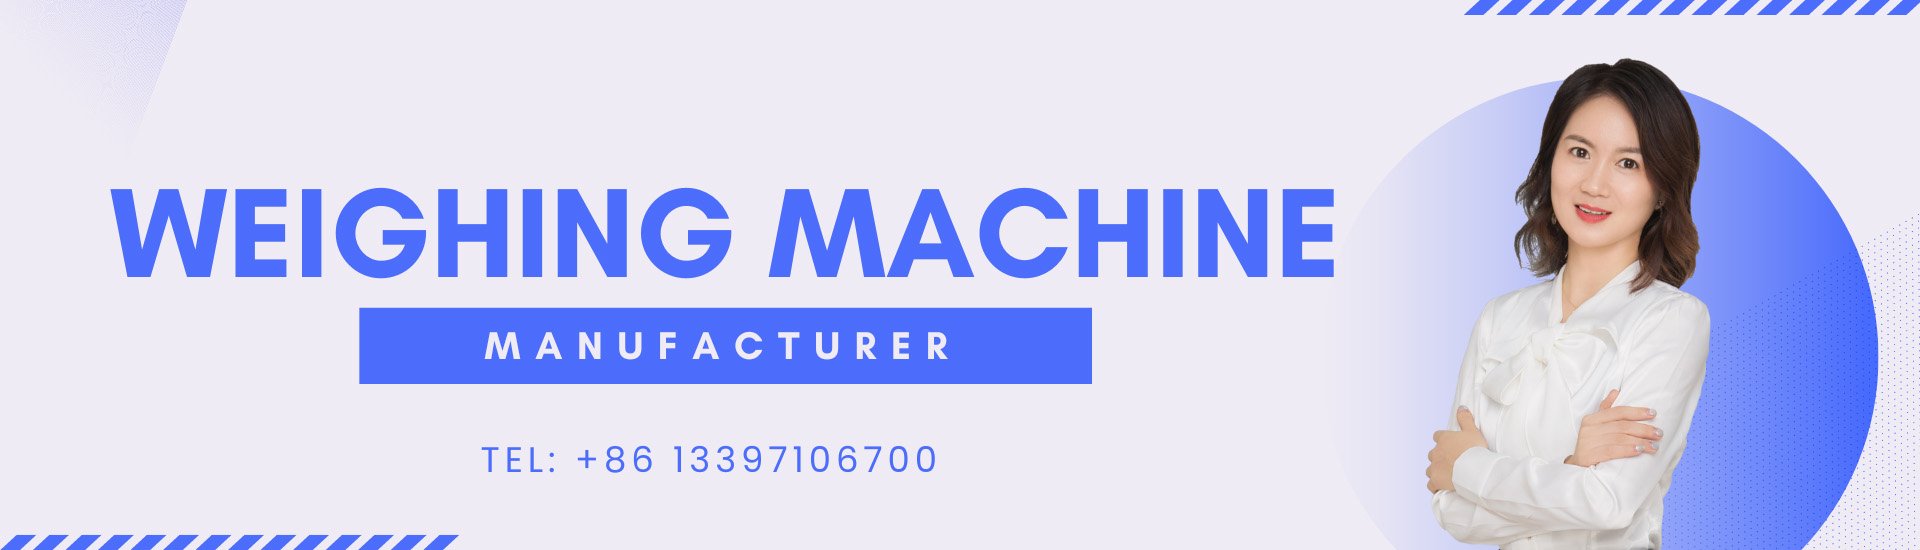 weighing machine banner